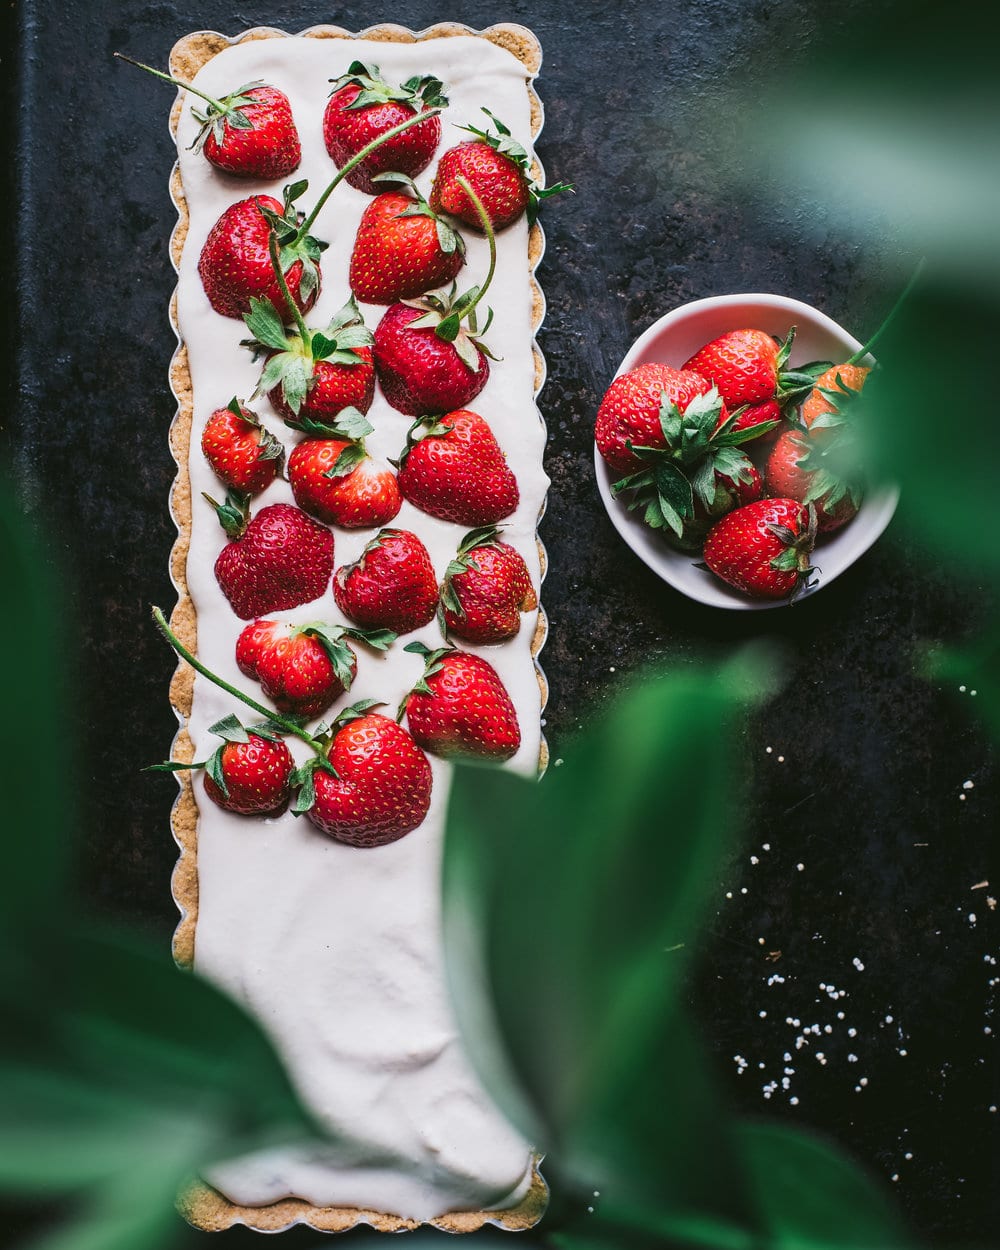 Vegan Strawberries and Cream Tart